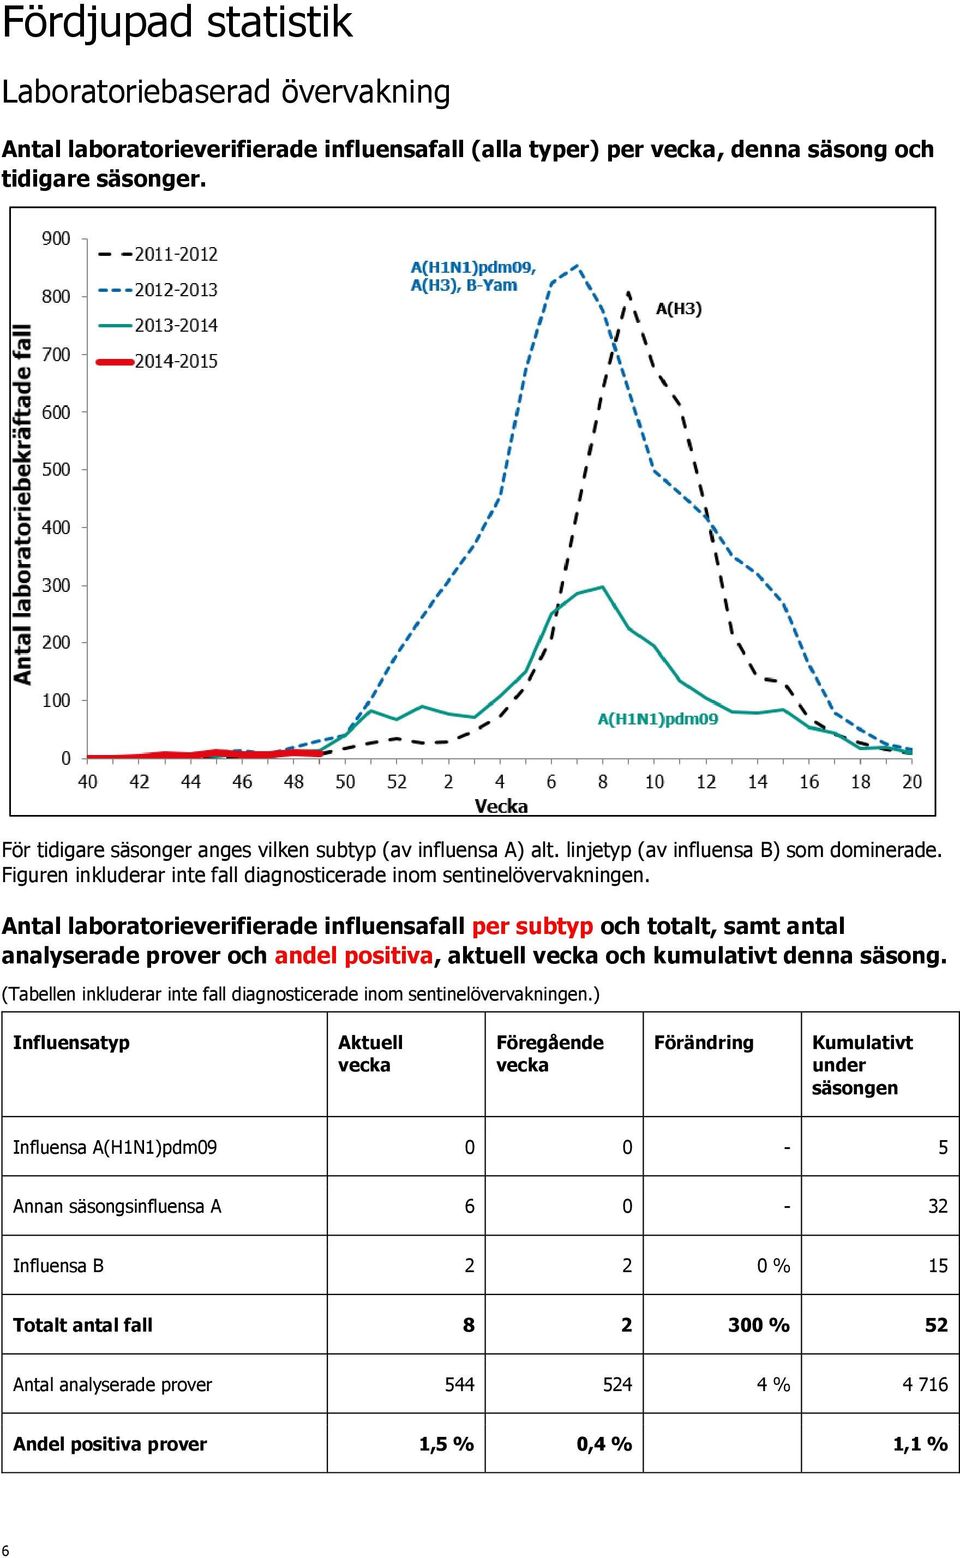 Antal laboratorieverifierade influensafall per subtyp och totalt, samt antal analyserade prover och andel positiva, aktuell och kumulativt denna säsong.